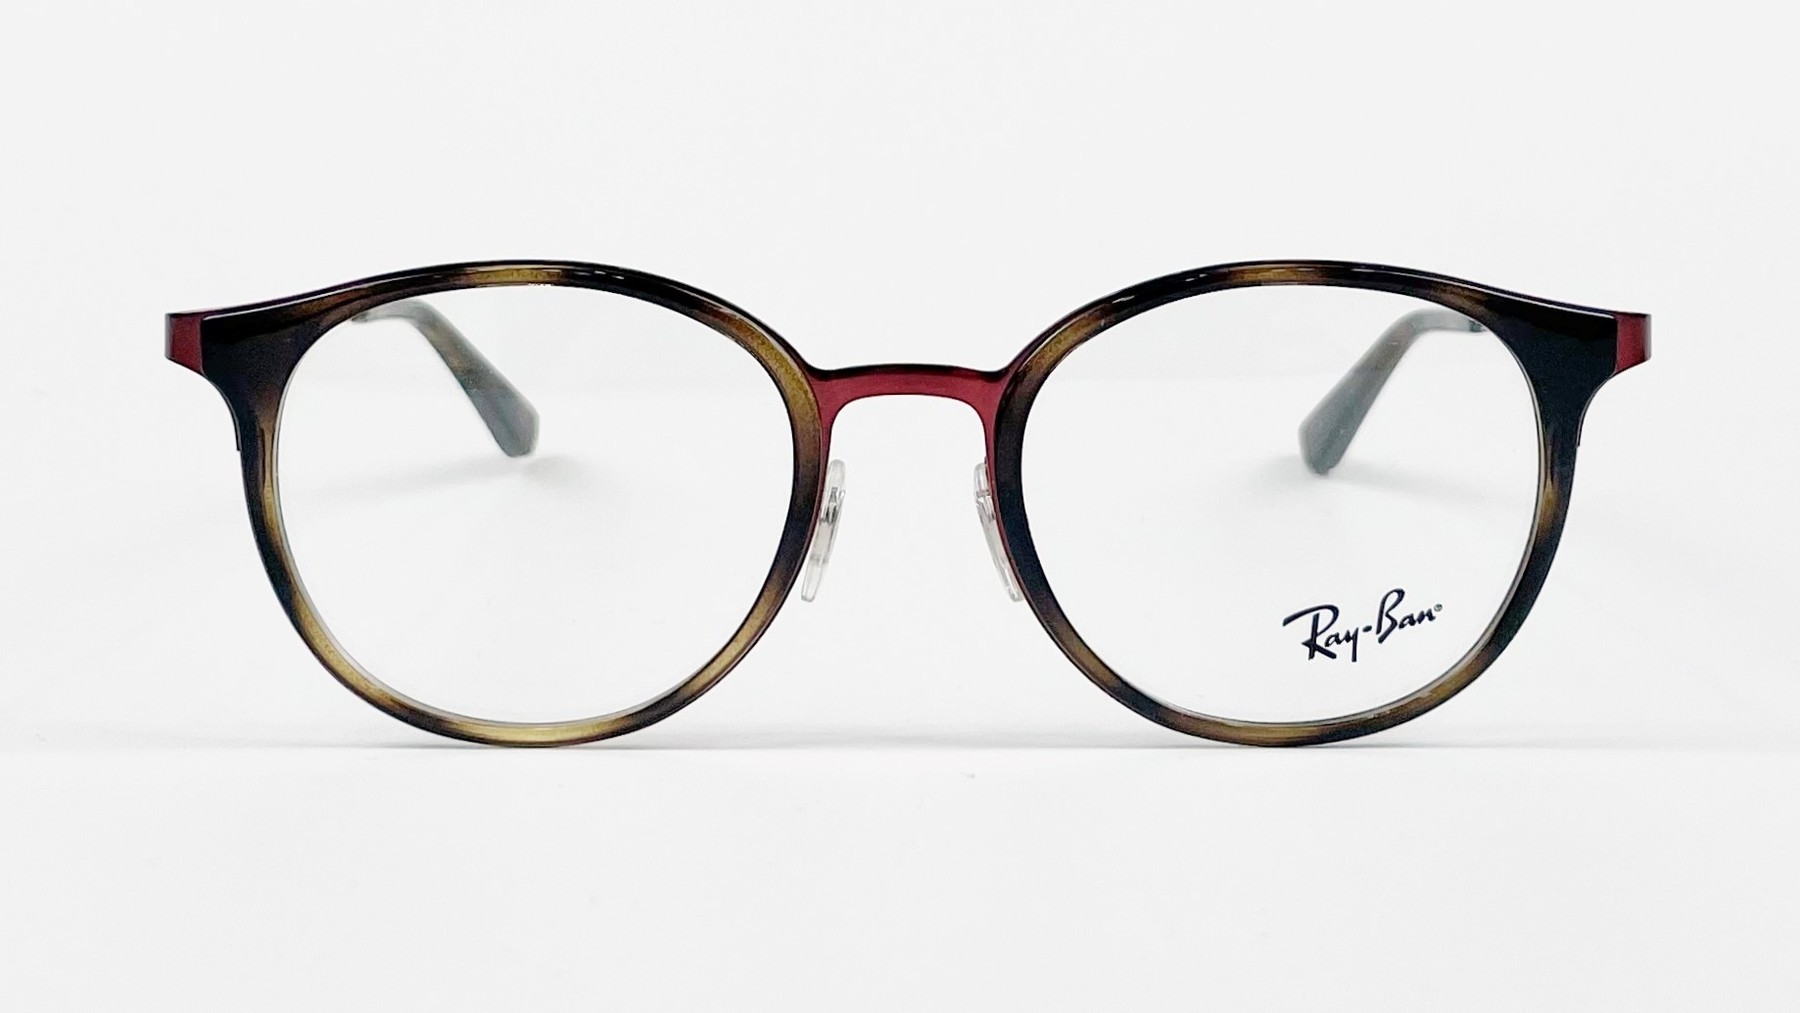 RayBan RB6372M 2922, Korean glasses, sunglasses, eyeglasses, glasses